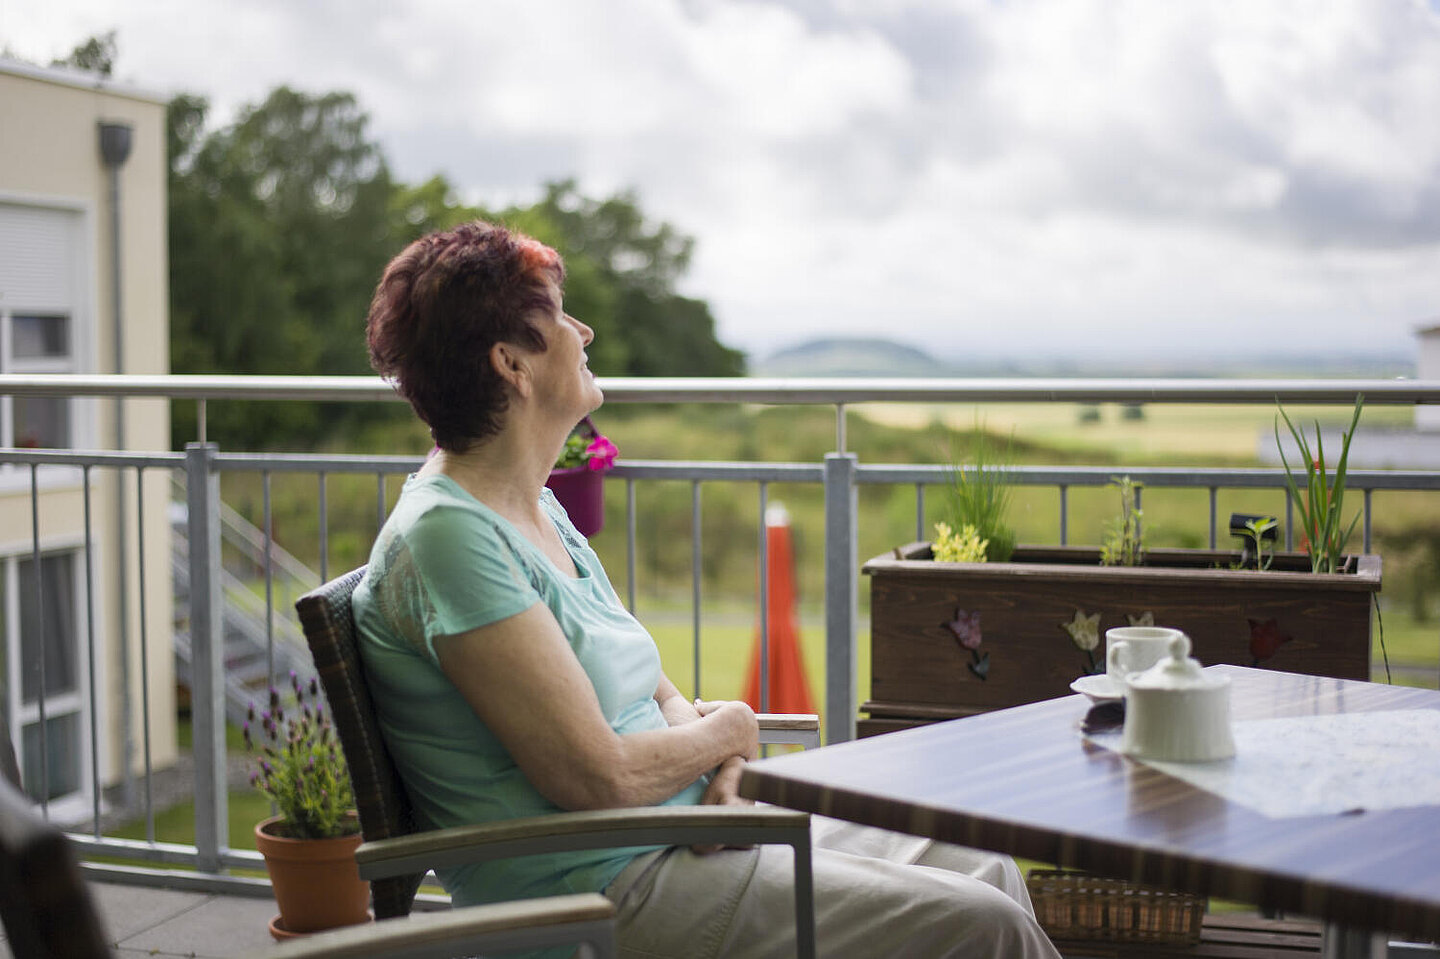 Auf einem Balkon an einem kleinen Tisch eine ältere Dame in hellgrauer Hose und türkisfarbenem Shirt. Sie trinkt Kaffee und schaut  mit erhobenem Kopf in den mit Wolken verhangenen Himmel.